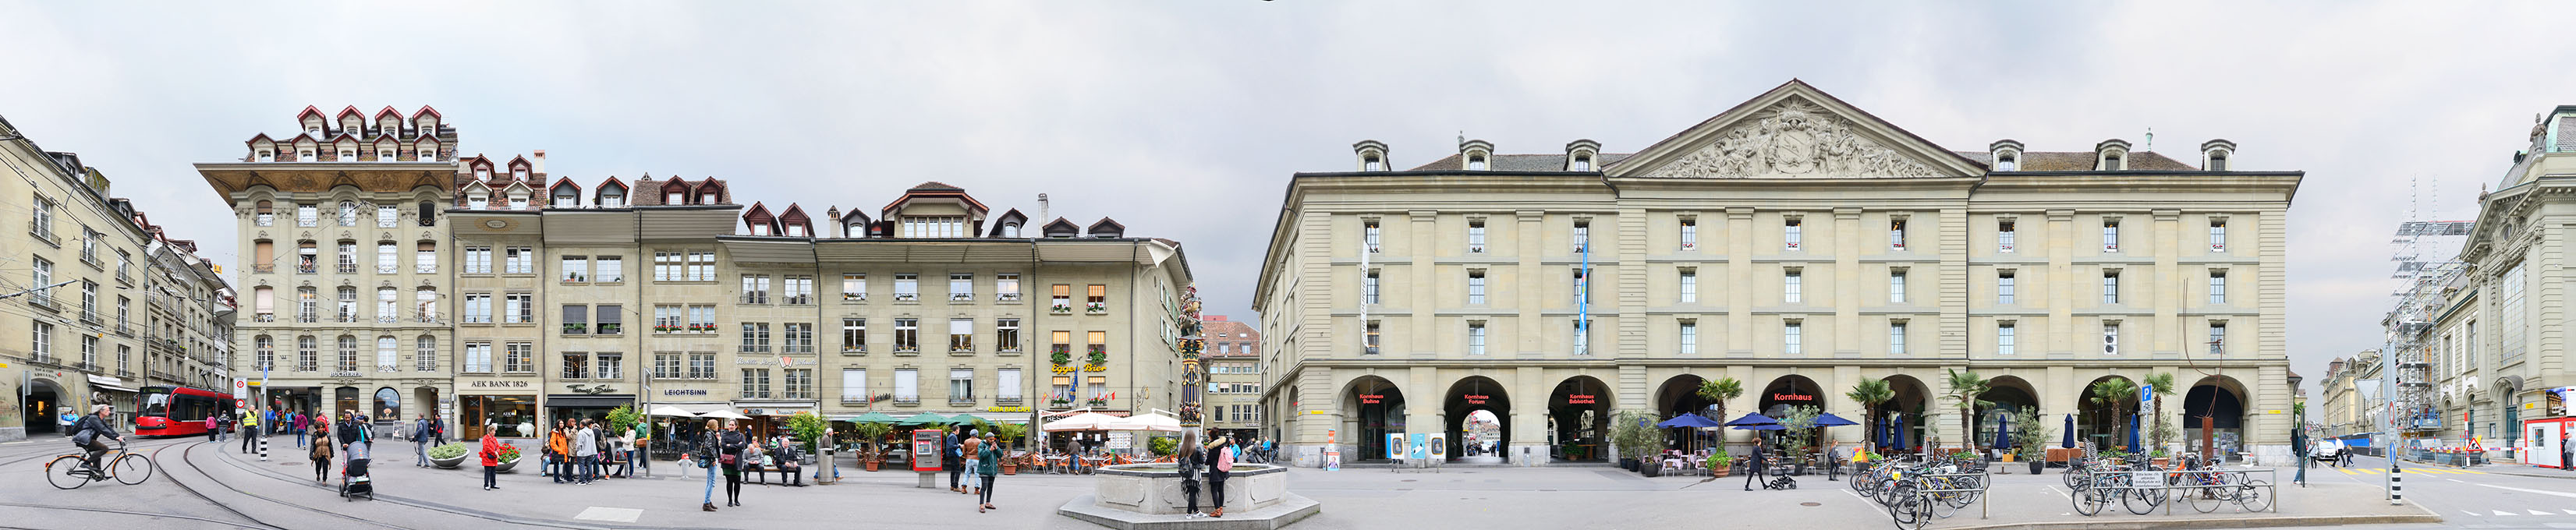 Bern central square Kornhausplatz, Switzerland, Svizzera, Panorama